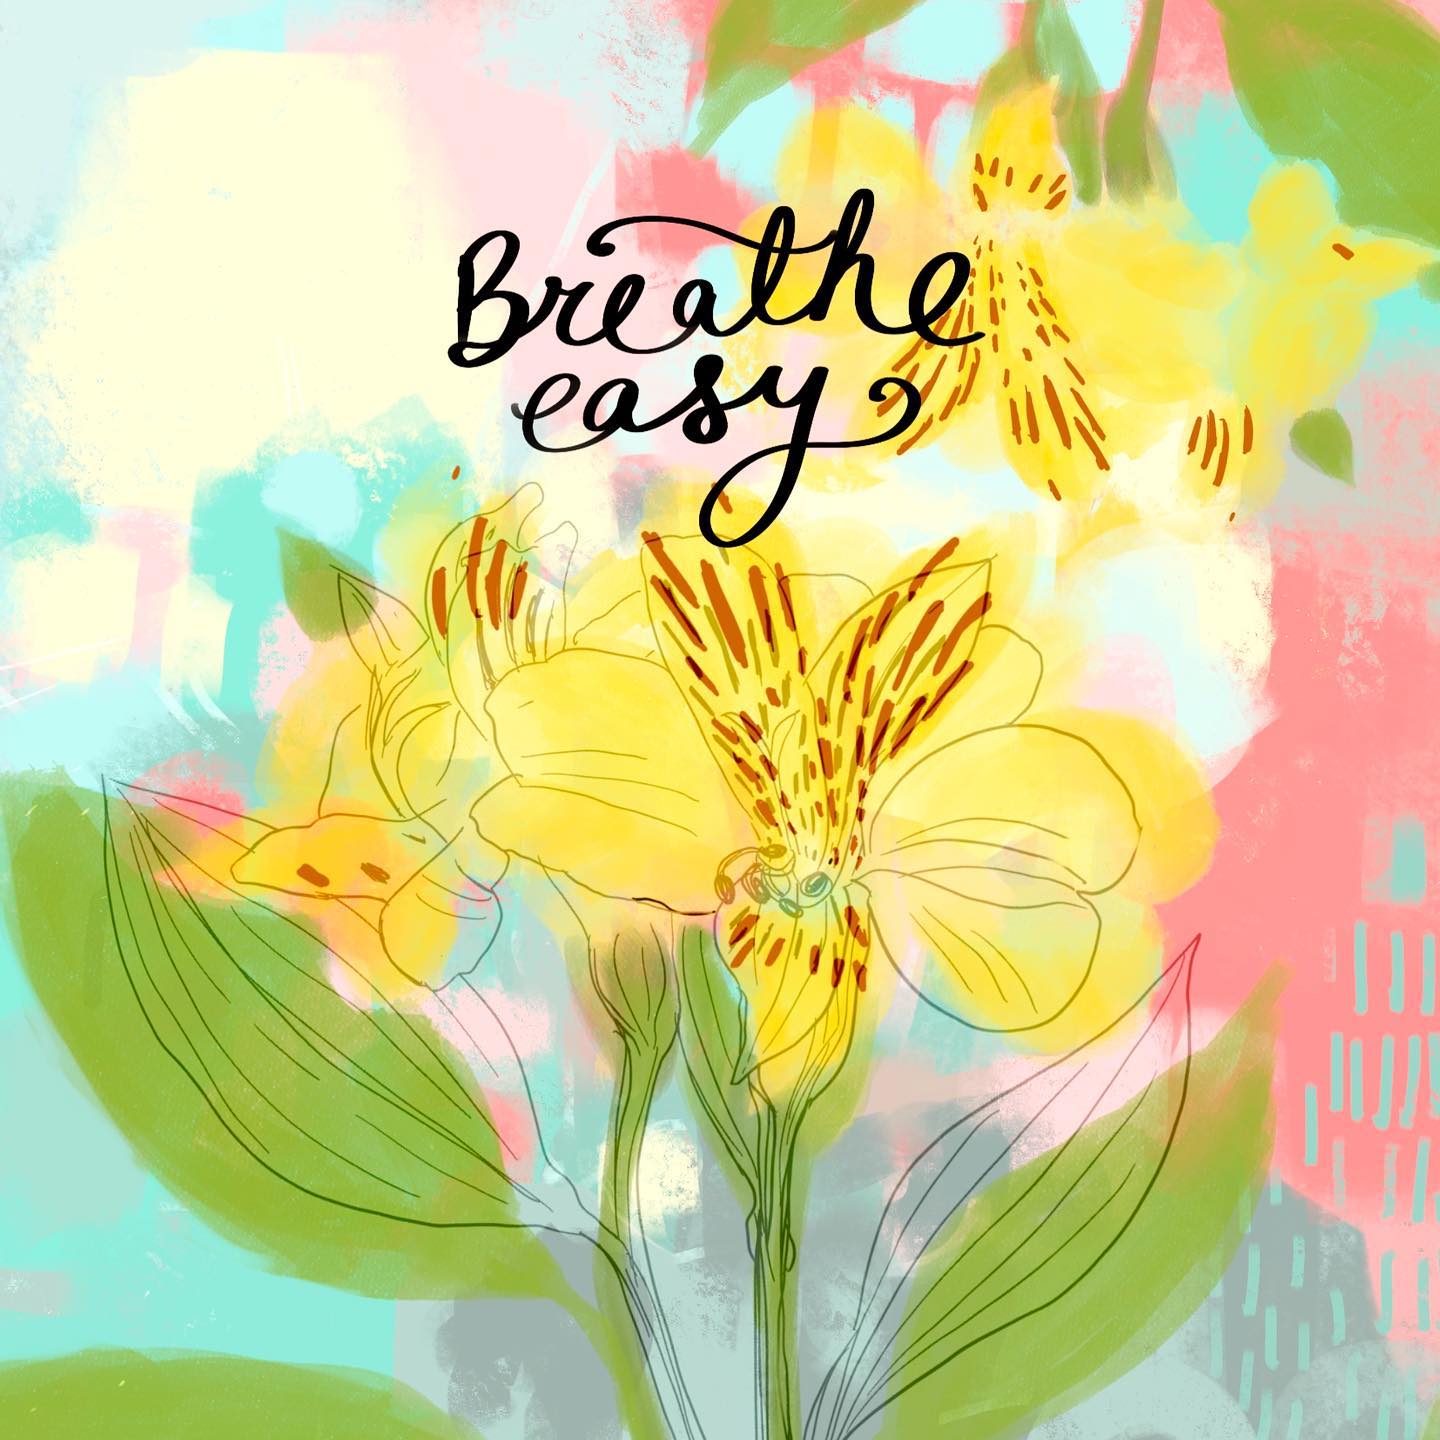 Breathe easy...